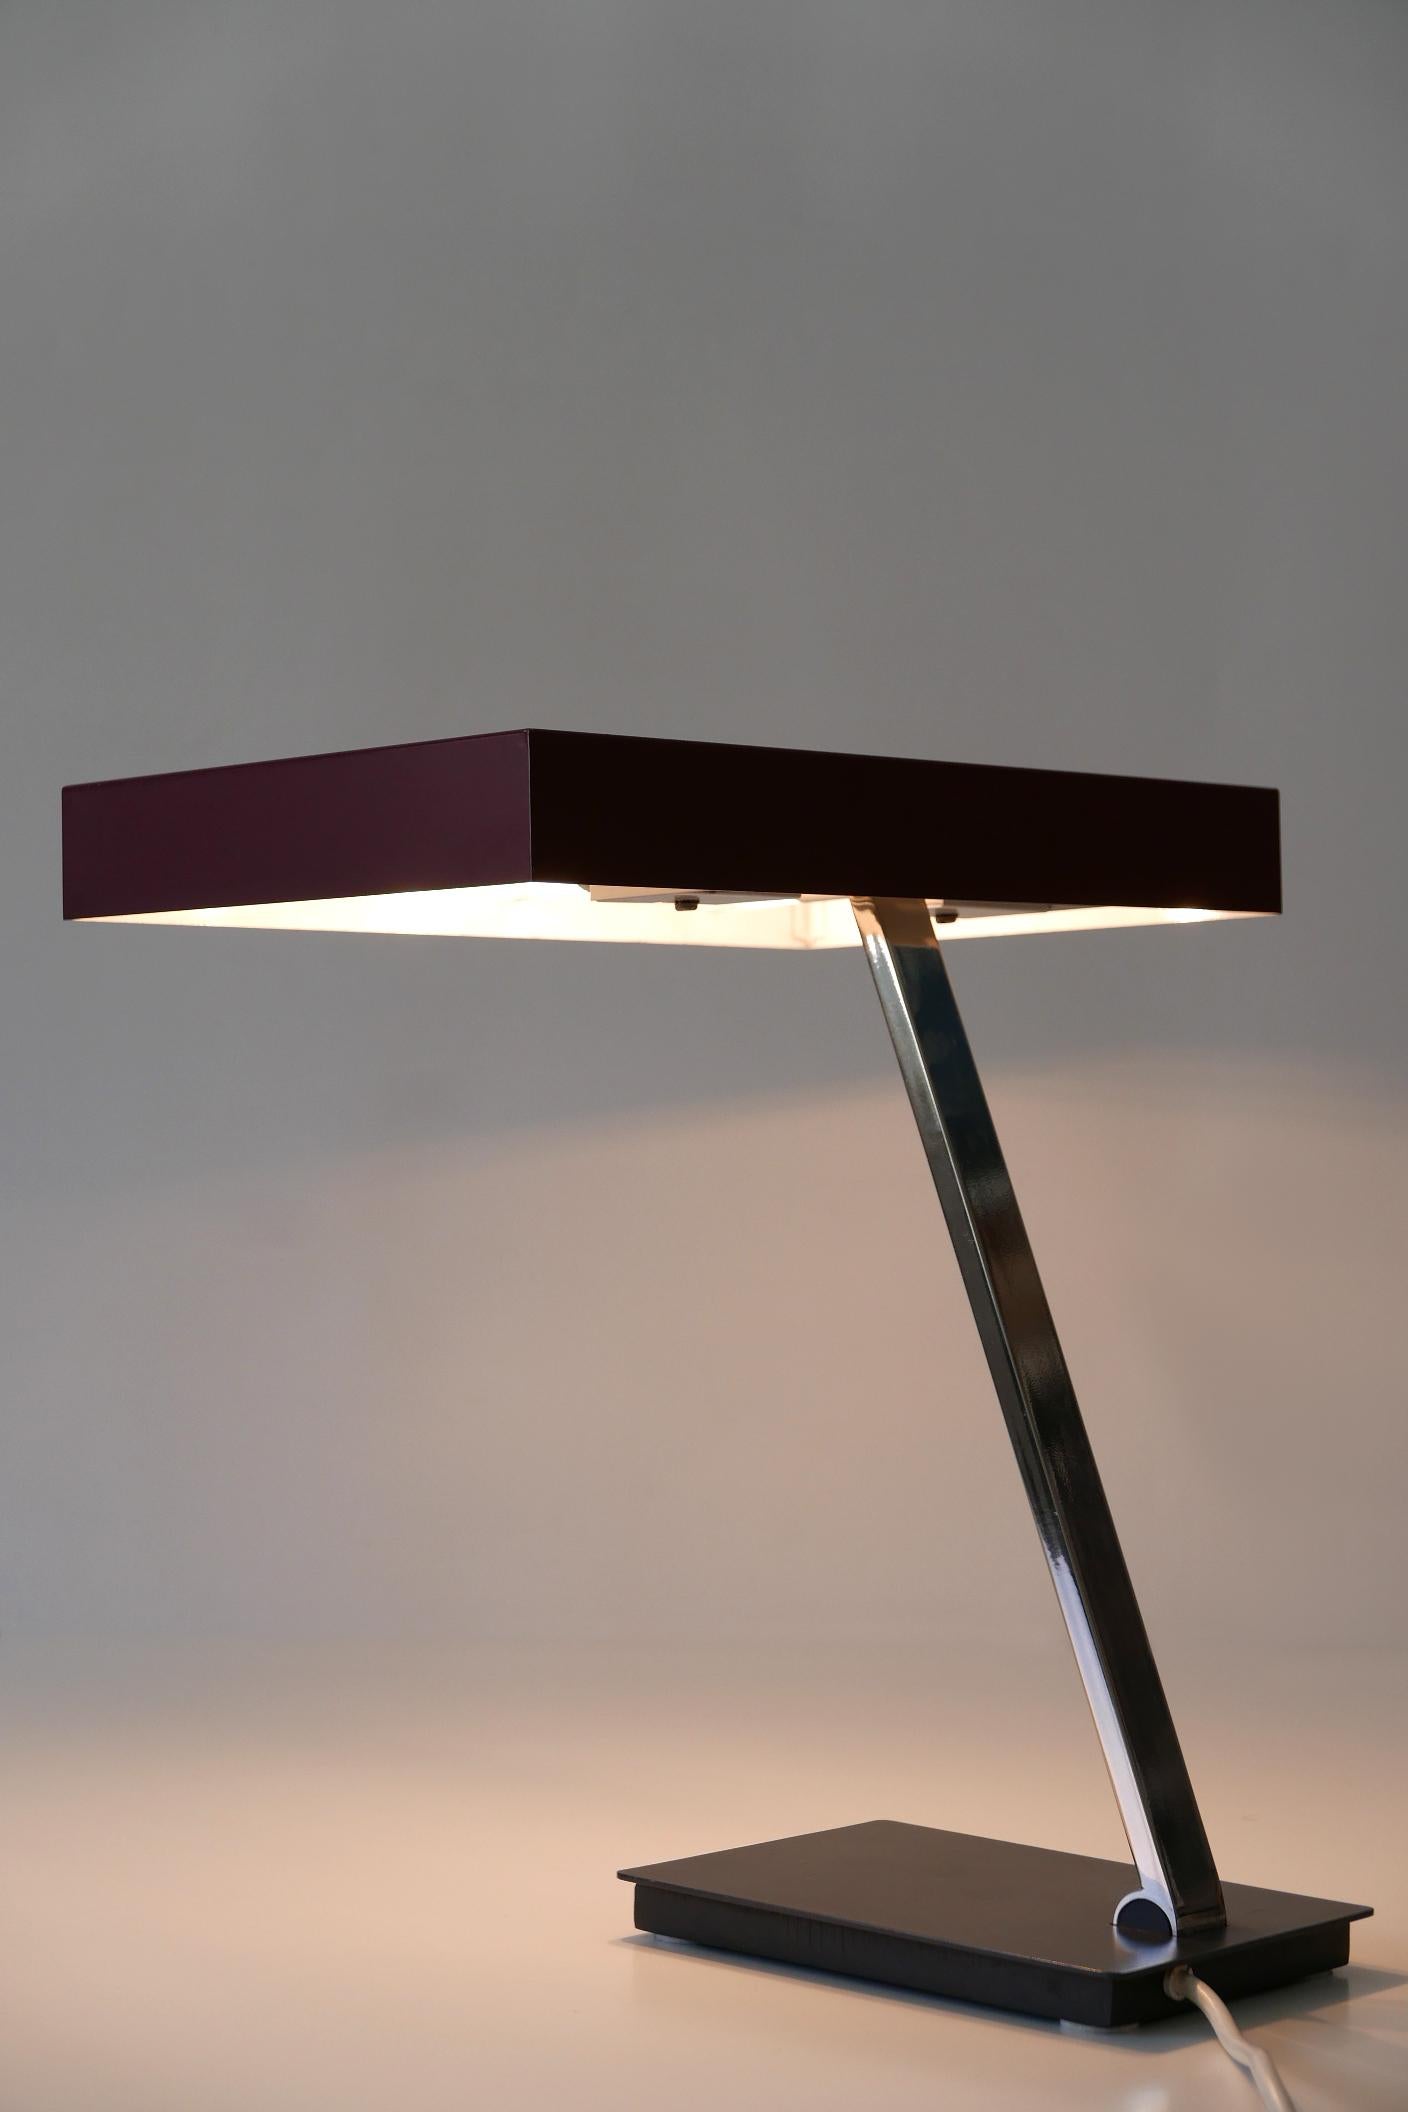 Luxury Mid-Century Modern President Table Lamp by Kaiser Leuchten 1960s Germany For Sale 3